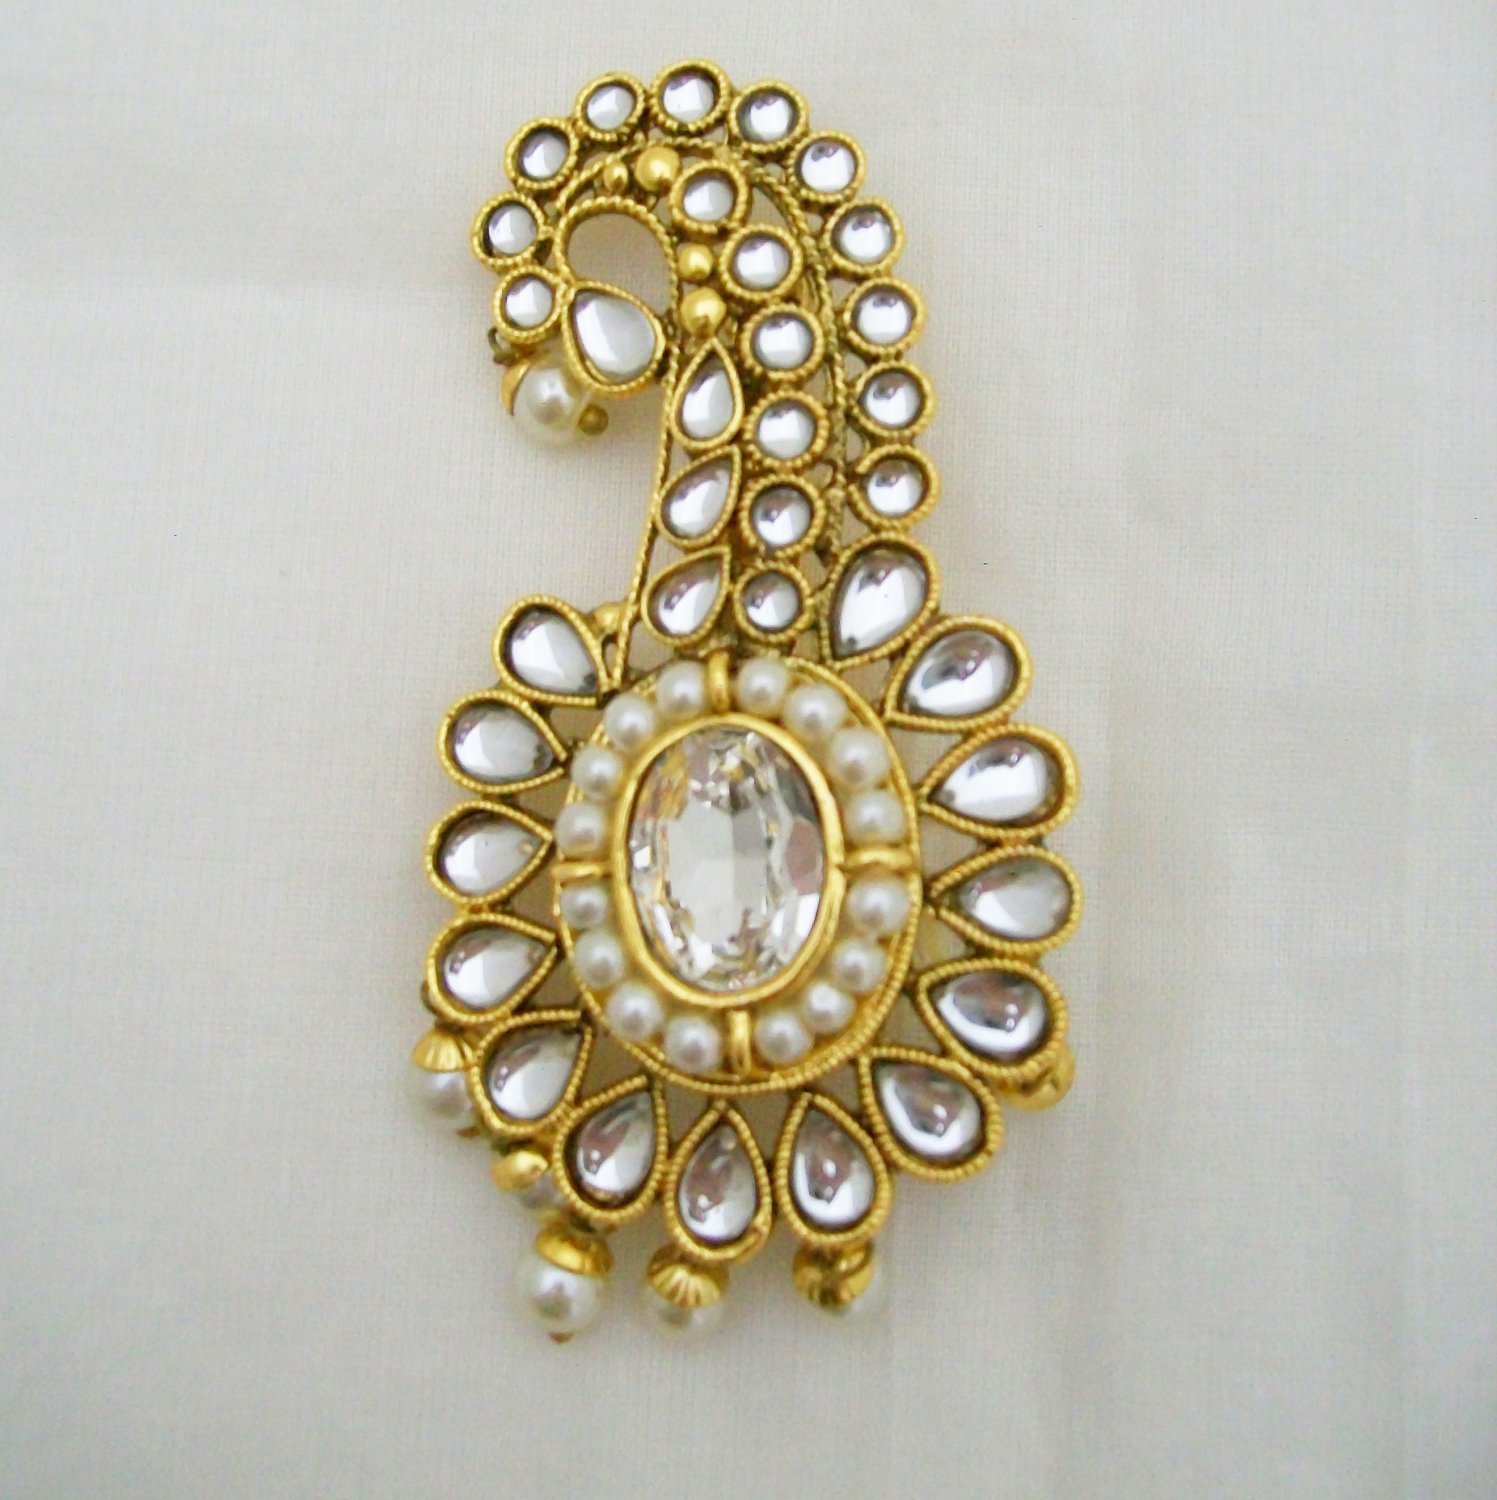 Kalgi Sarpech Turban Jewel Pin Indian Sikh Wedding Groom Jewelry